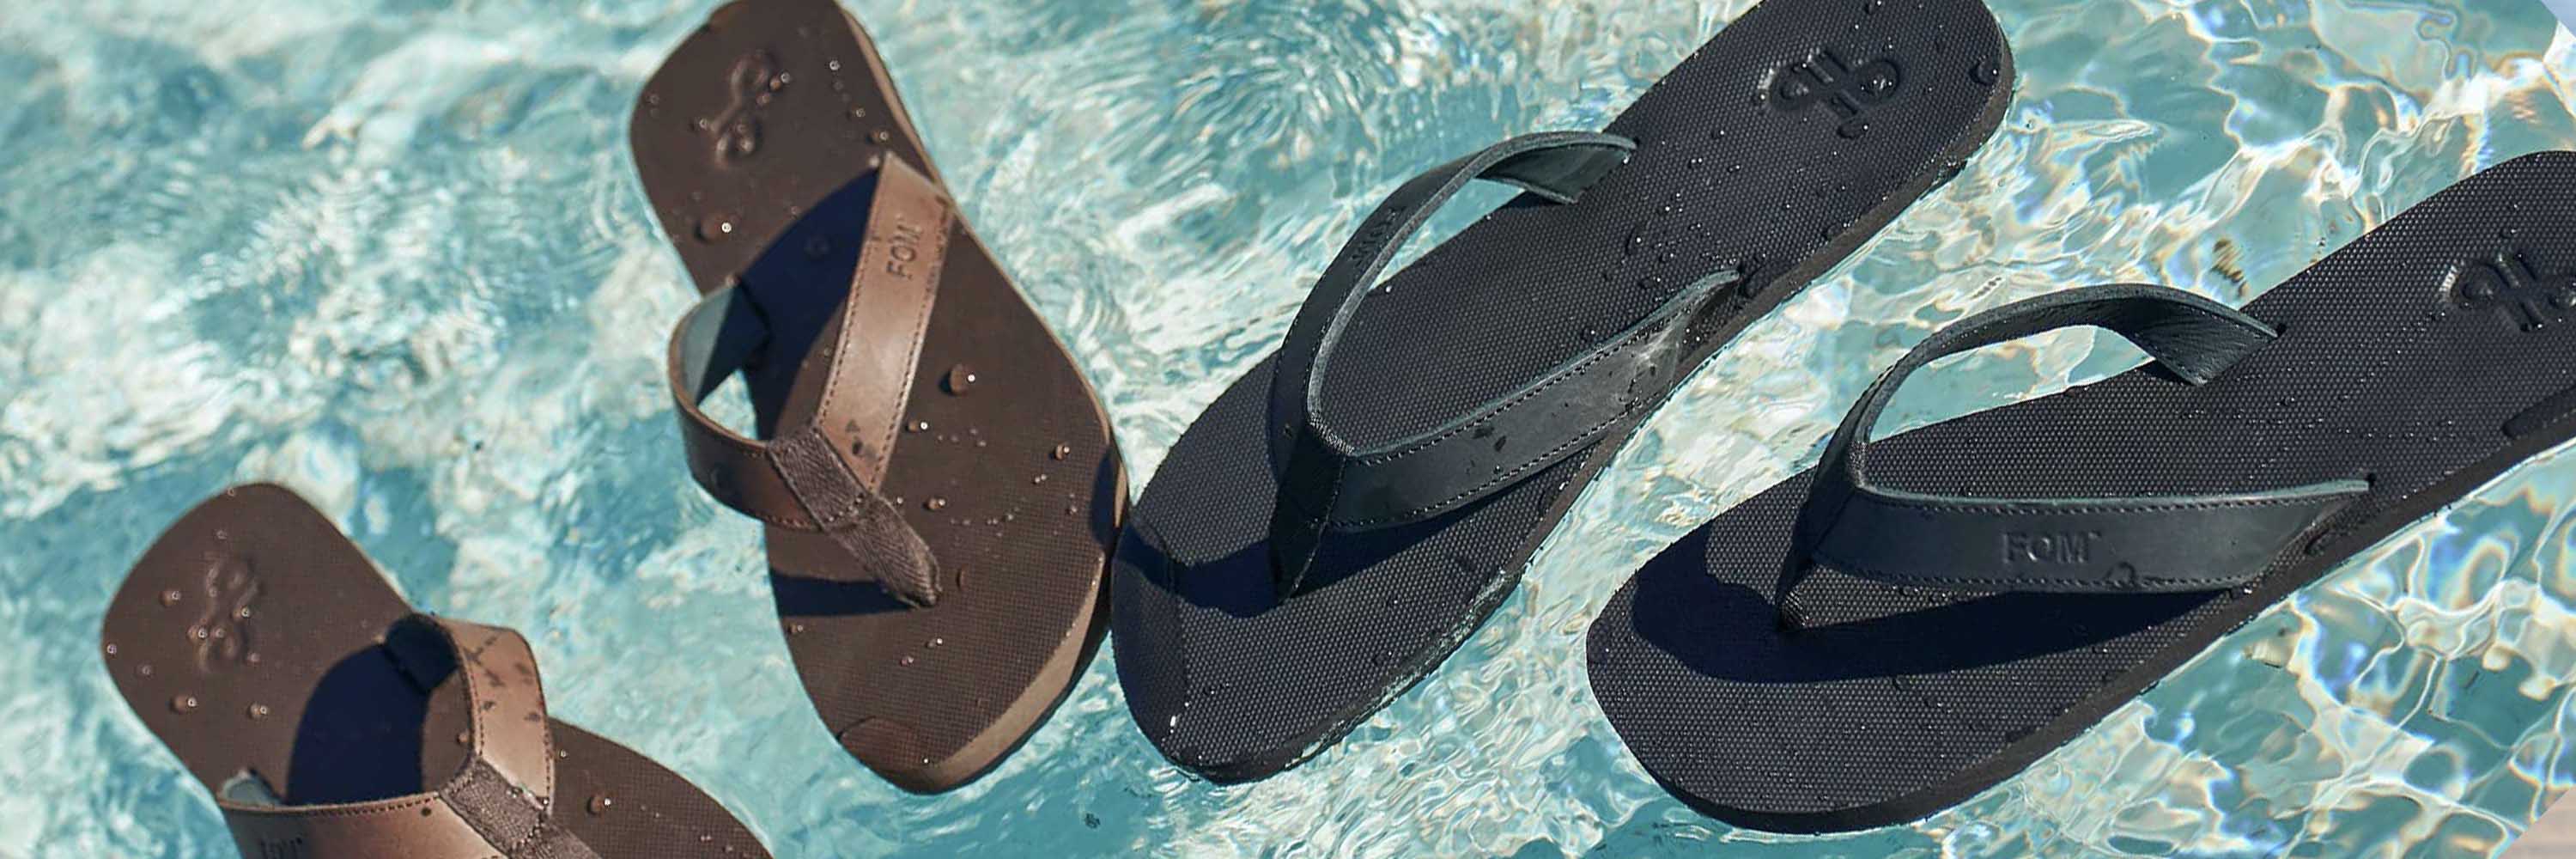 Summer Sandals Deal